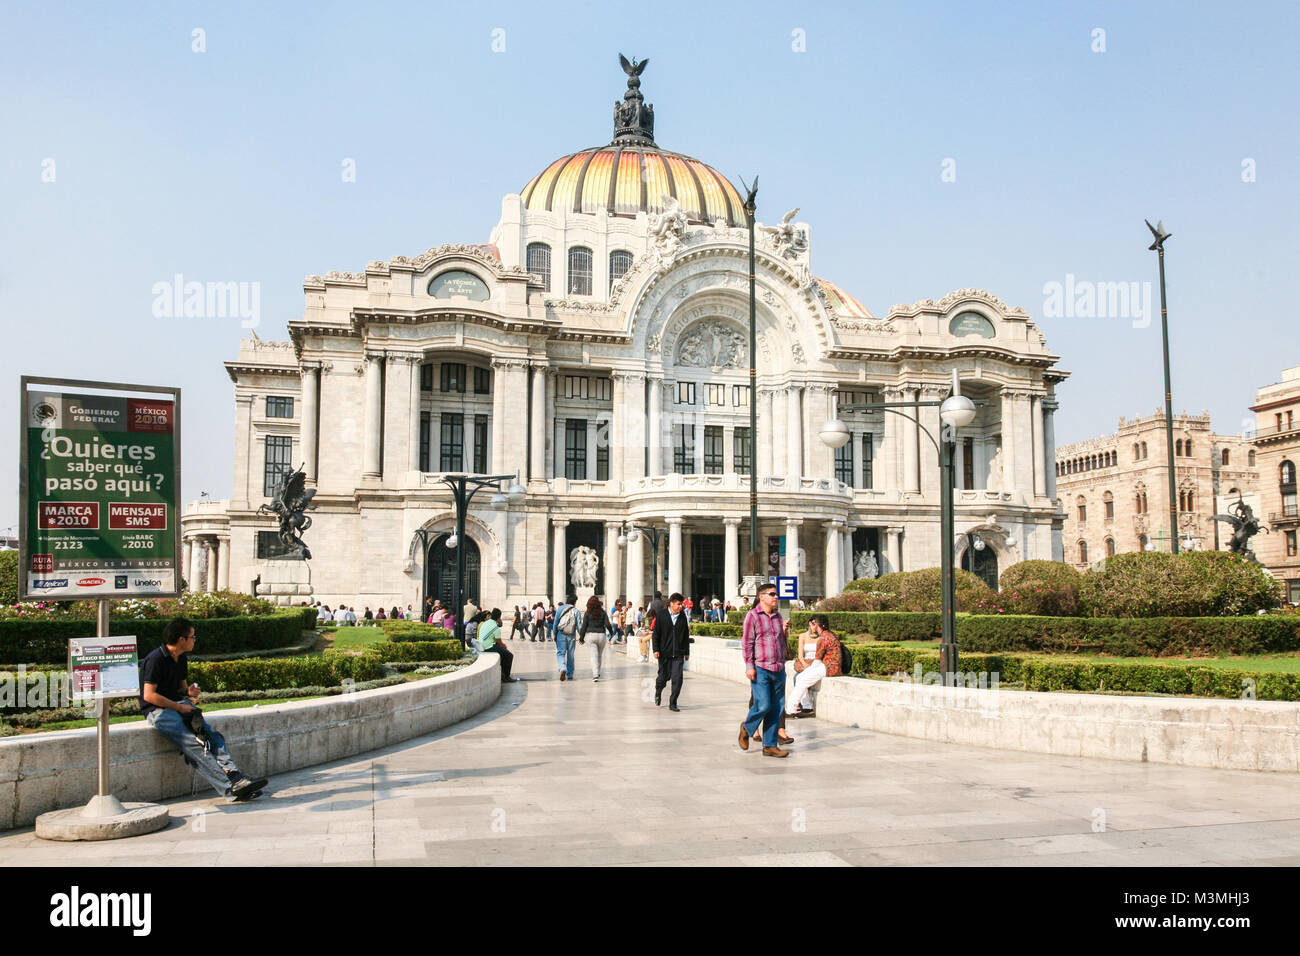 La ville de Mexico, Mexique - mars 3d, 2012 : les gens à pied par le Palacio de Bellas Artes de Mexico City, Mexico DF, Mexique Banque D'Images